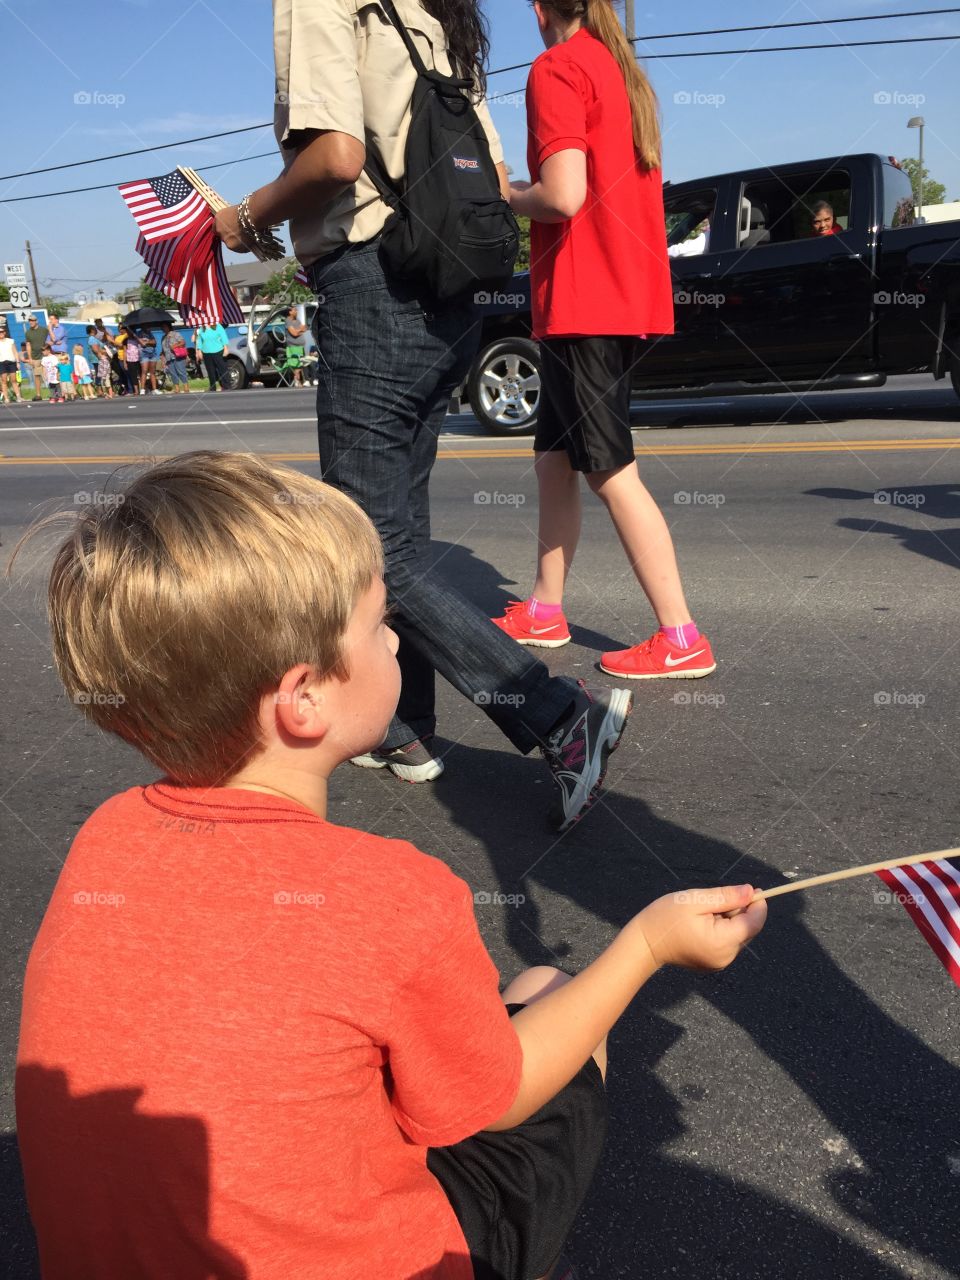 Patriotic flag waving child 